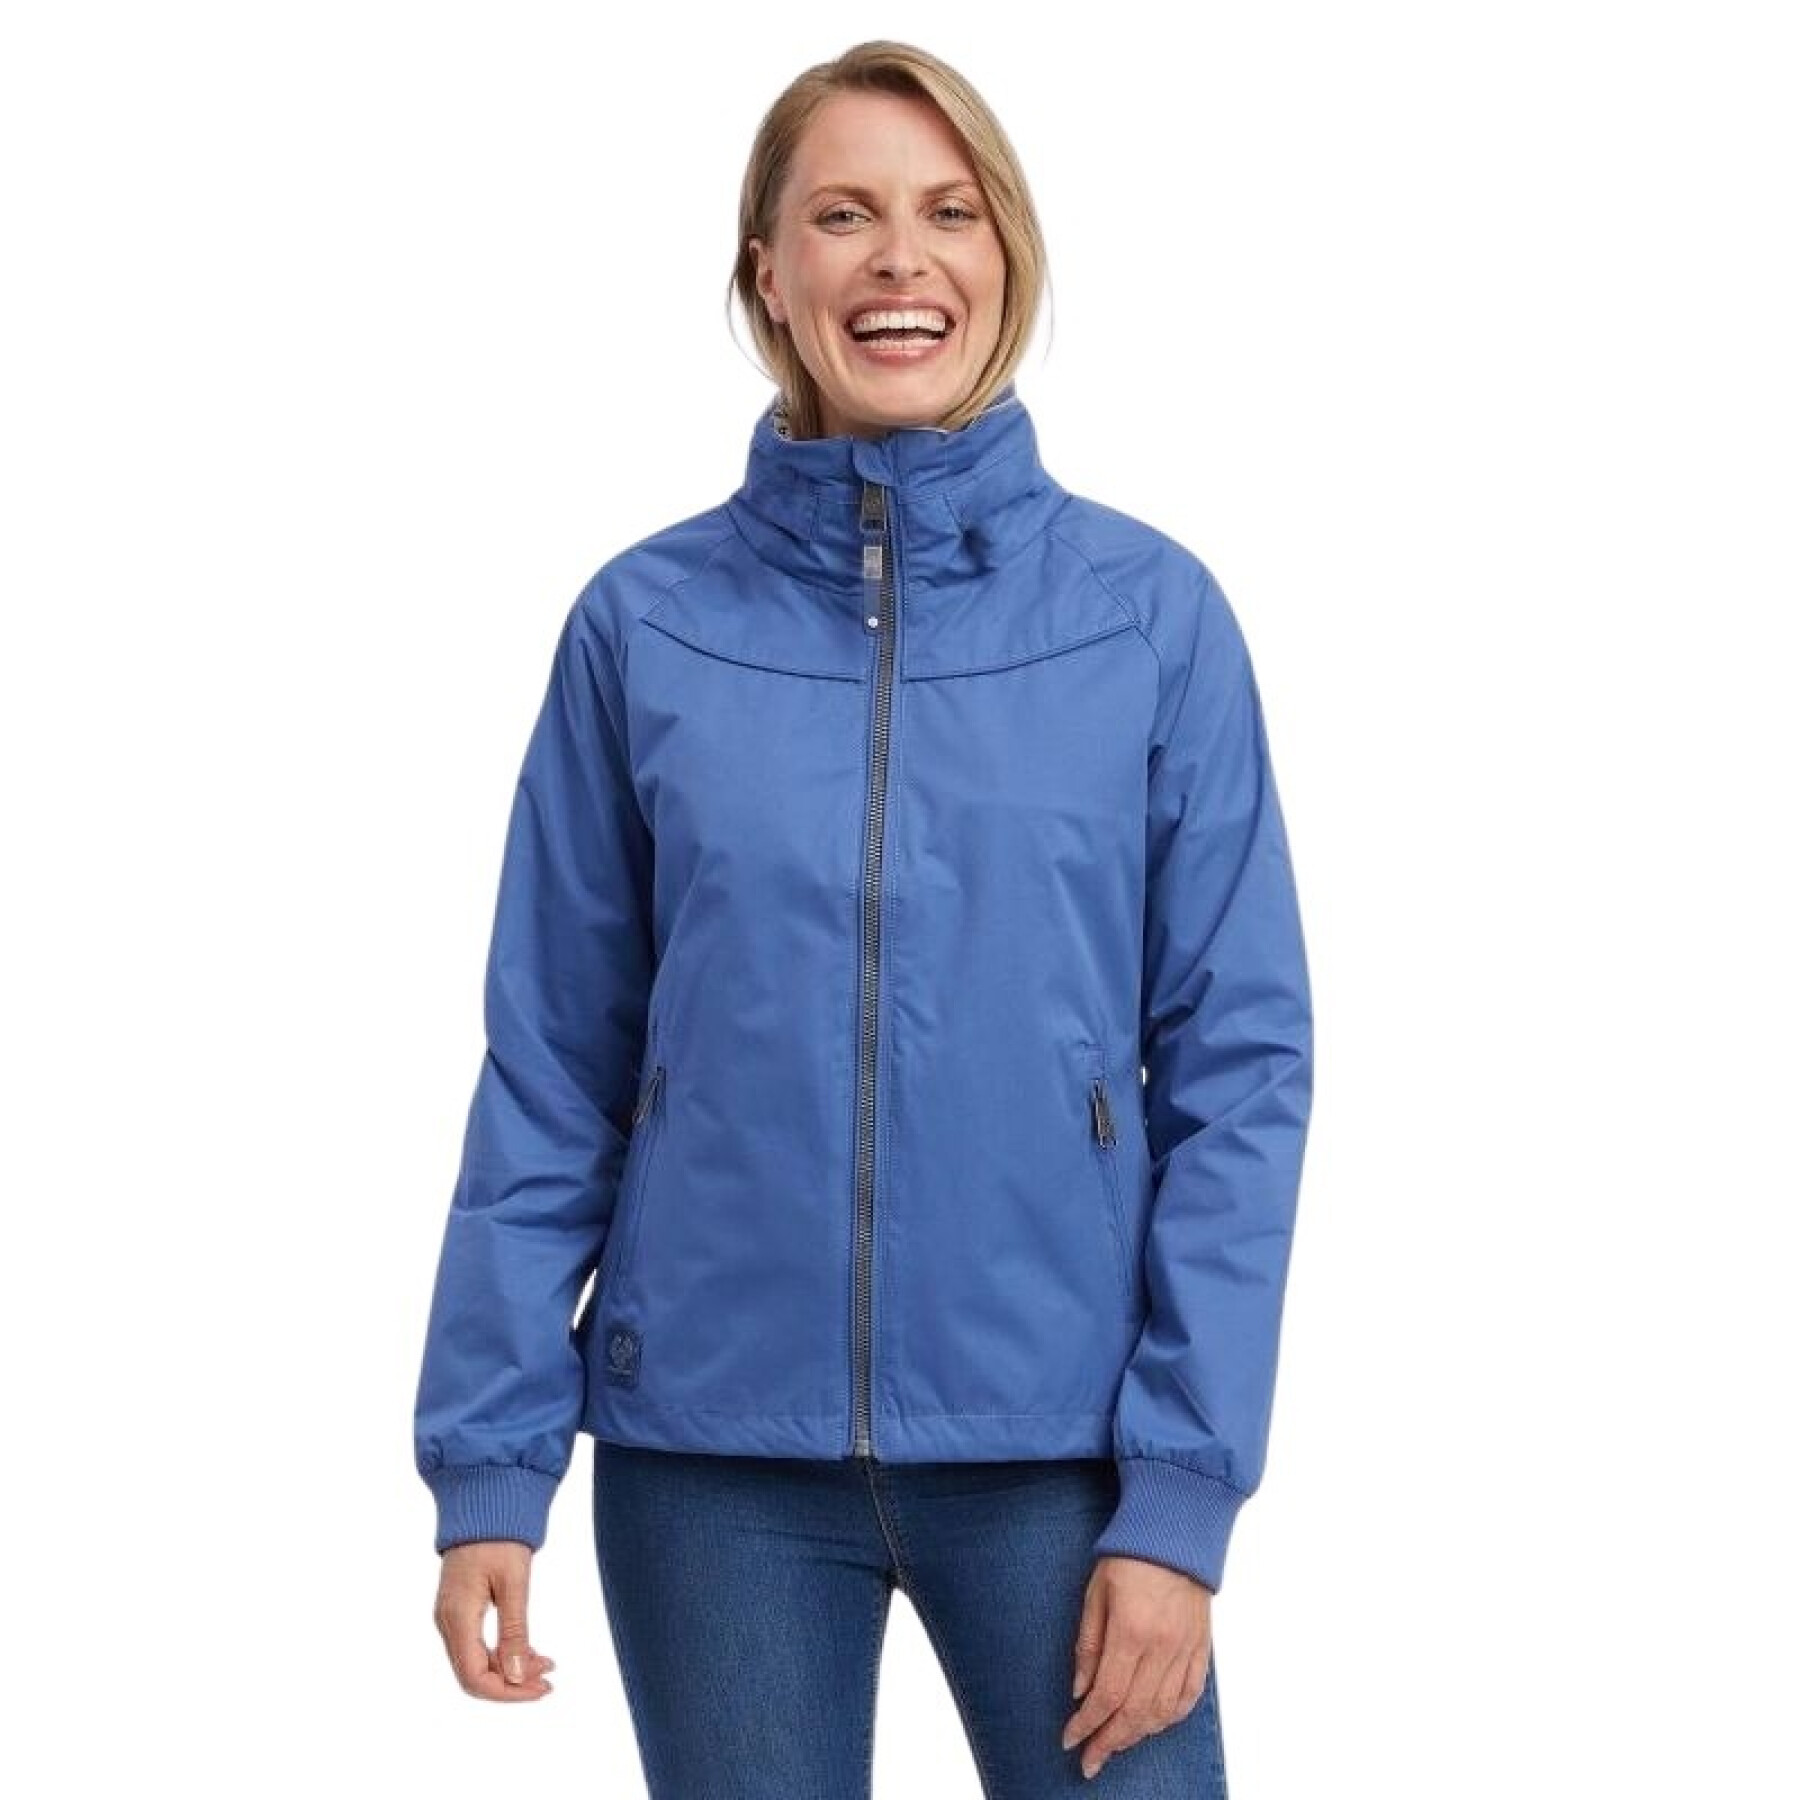 Women's waterproof jacket Ragwear Apola